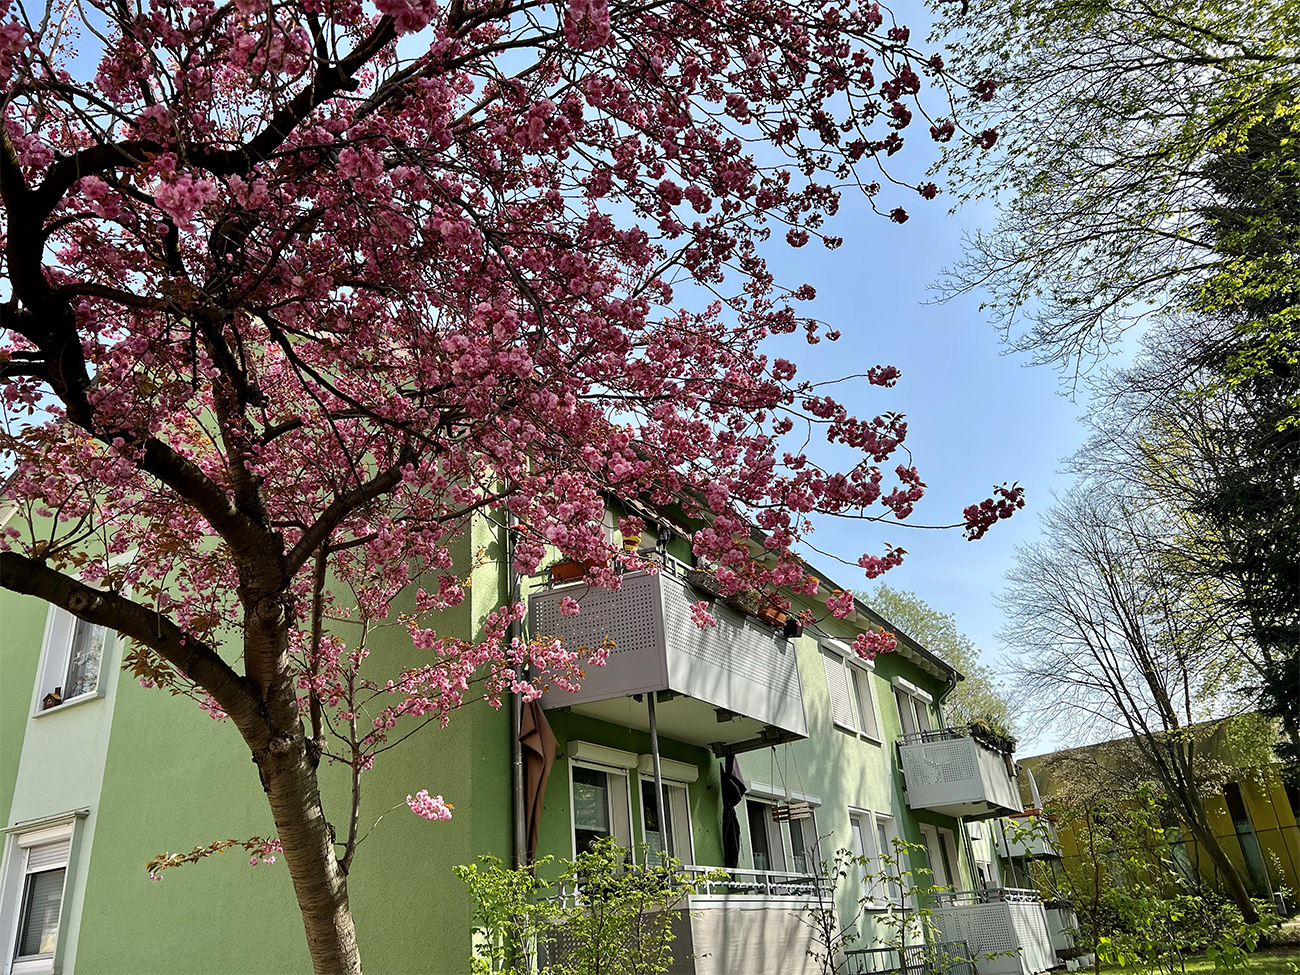 Balkone eines Hauses mit einem blühenden Kirschblütenbaum davor.